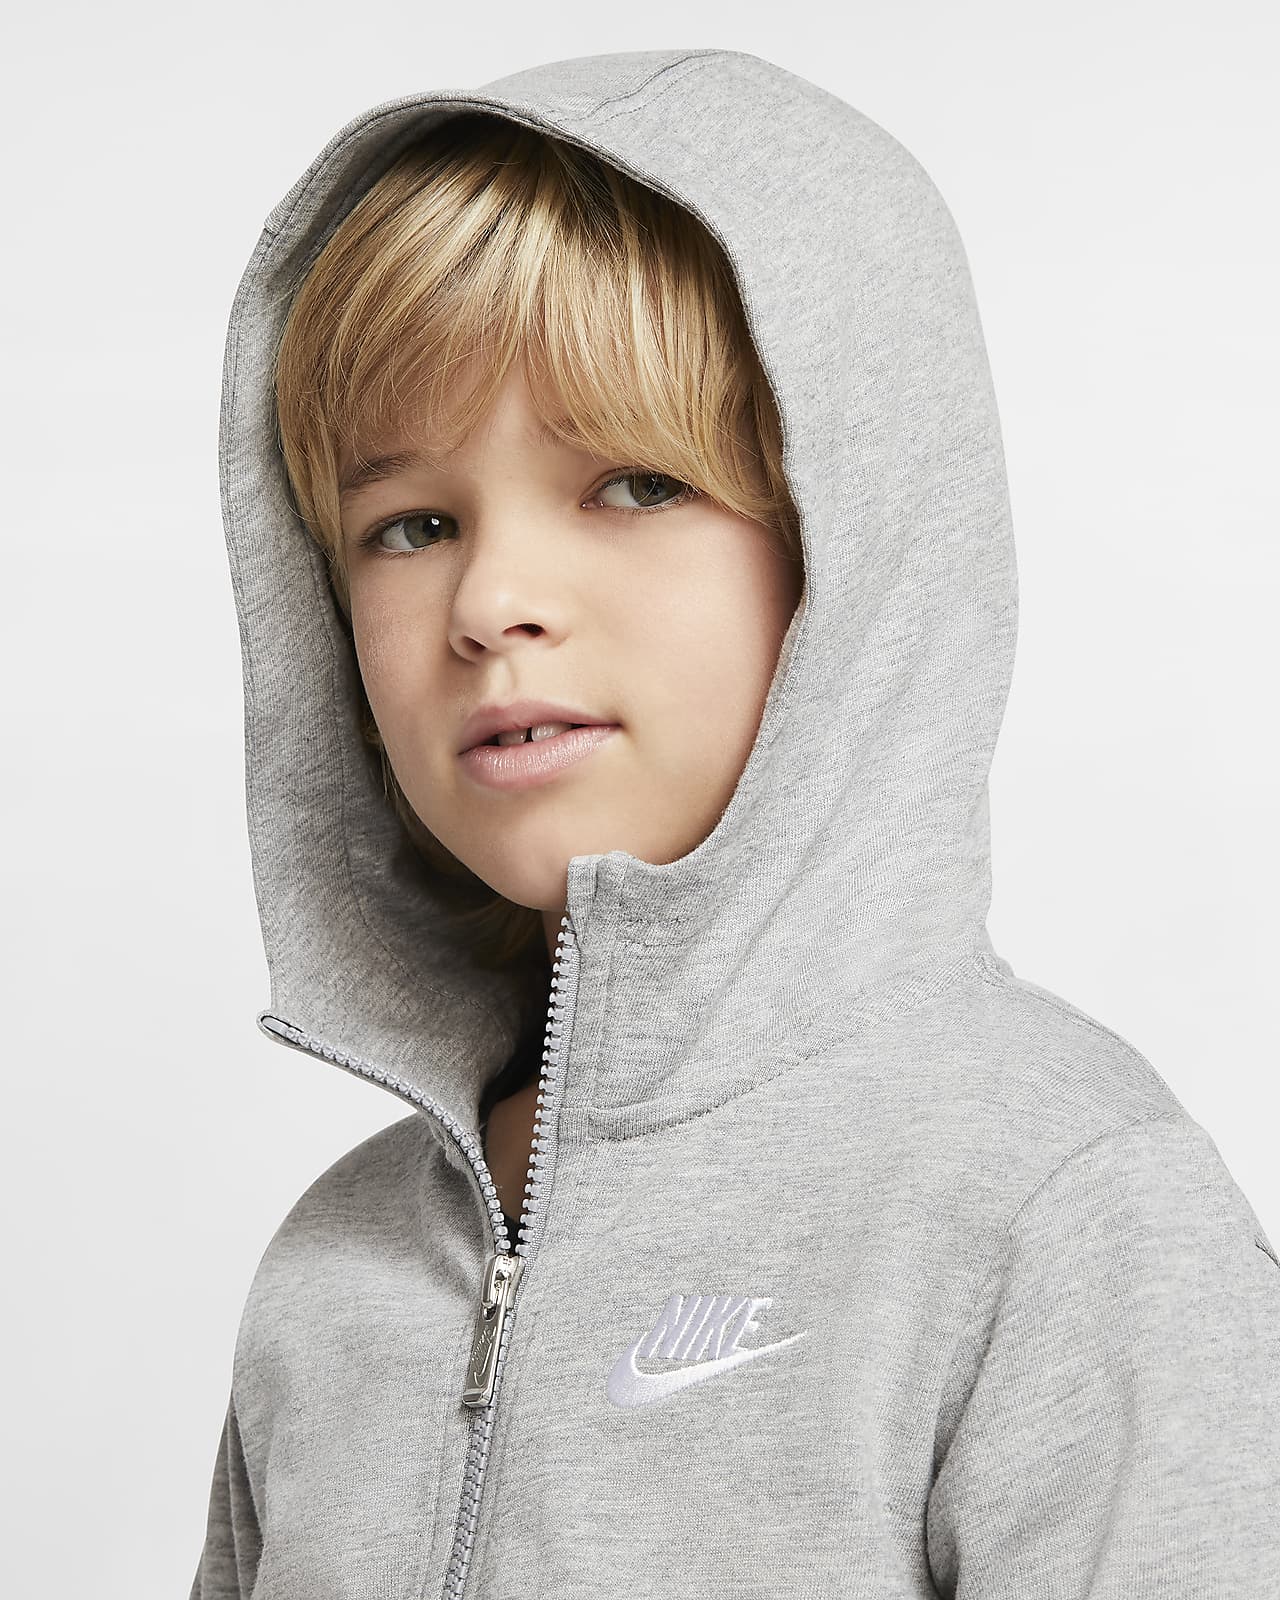 Sudadera y cierre para niños pequeños Sportswear. Nike.com